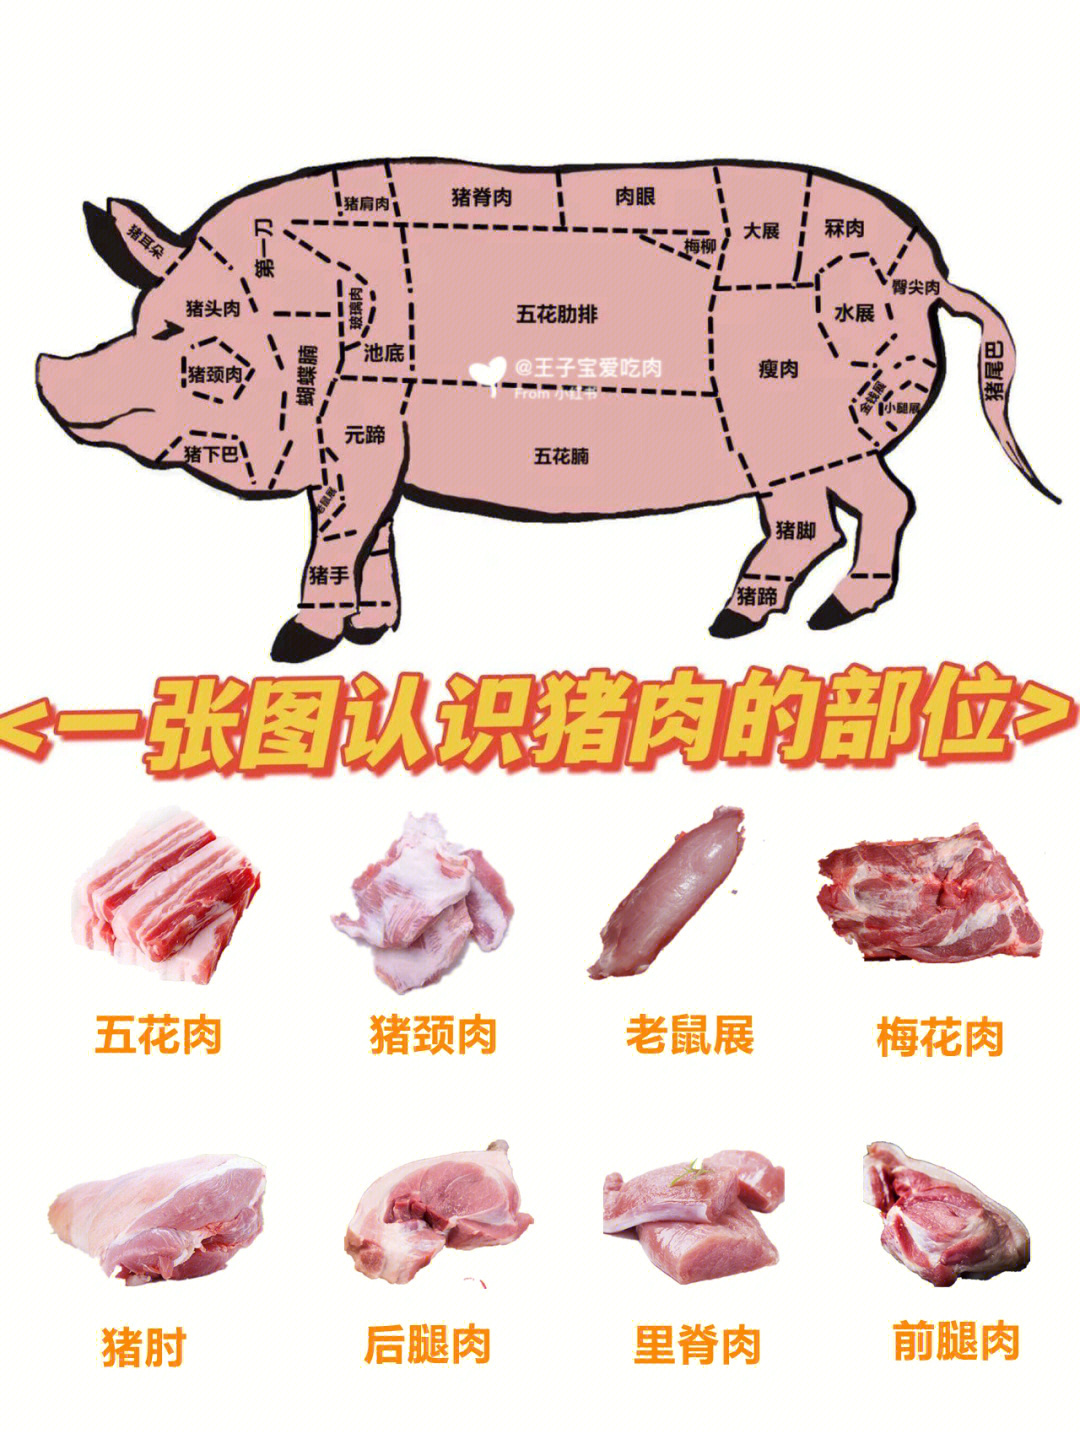 猪肉各个部位名称图解图片